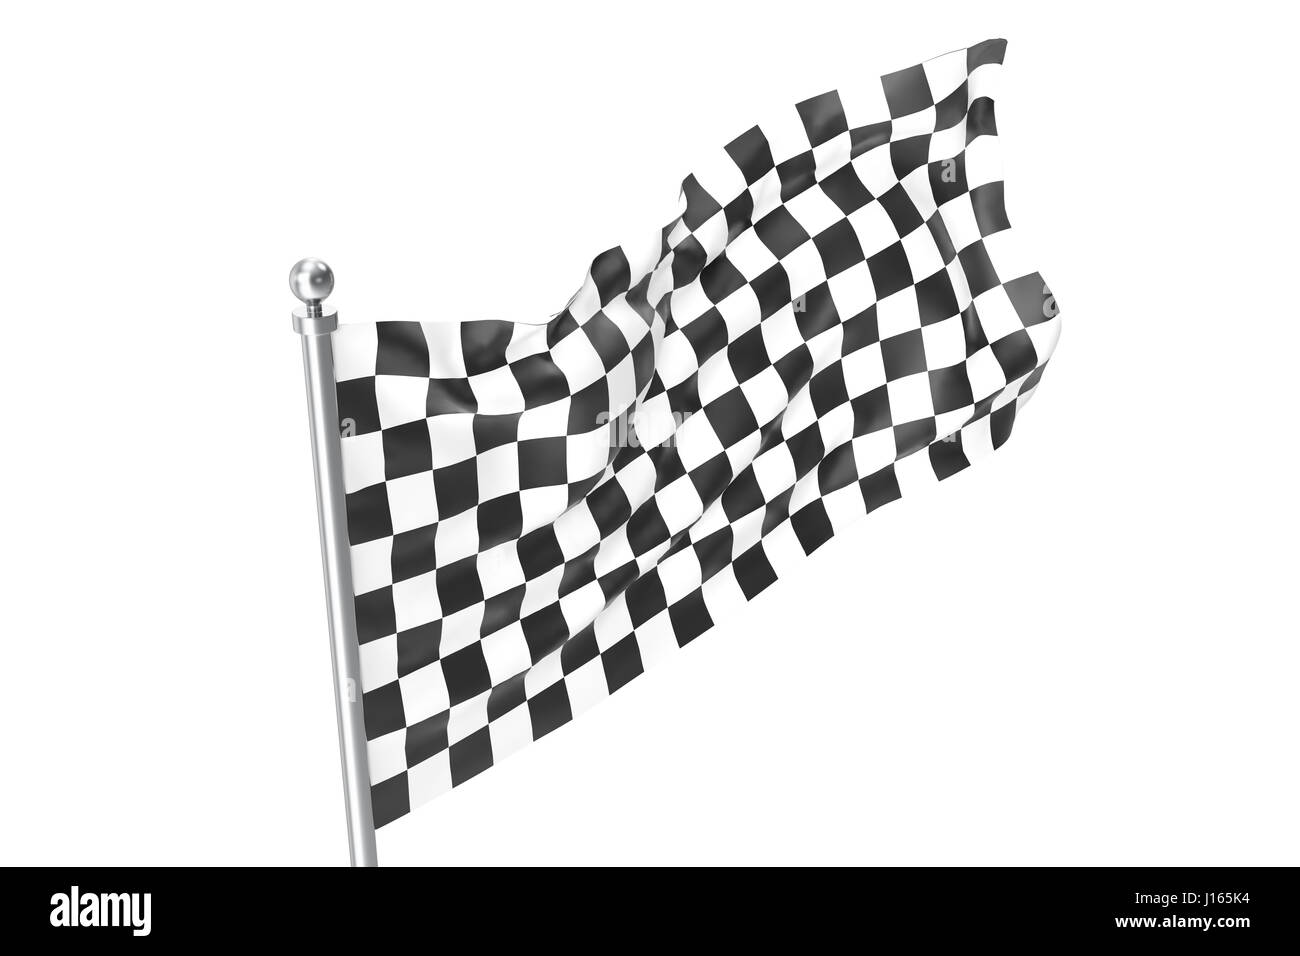 Pavillon de course mouvementée. La finition du drapeau à damier, rendu 3D isolé sur fond blanc Banque D'Images